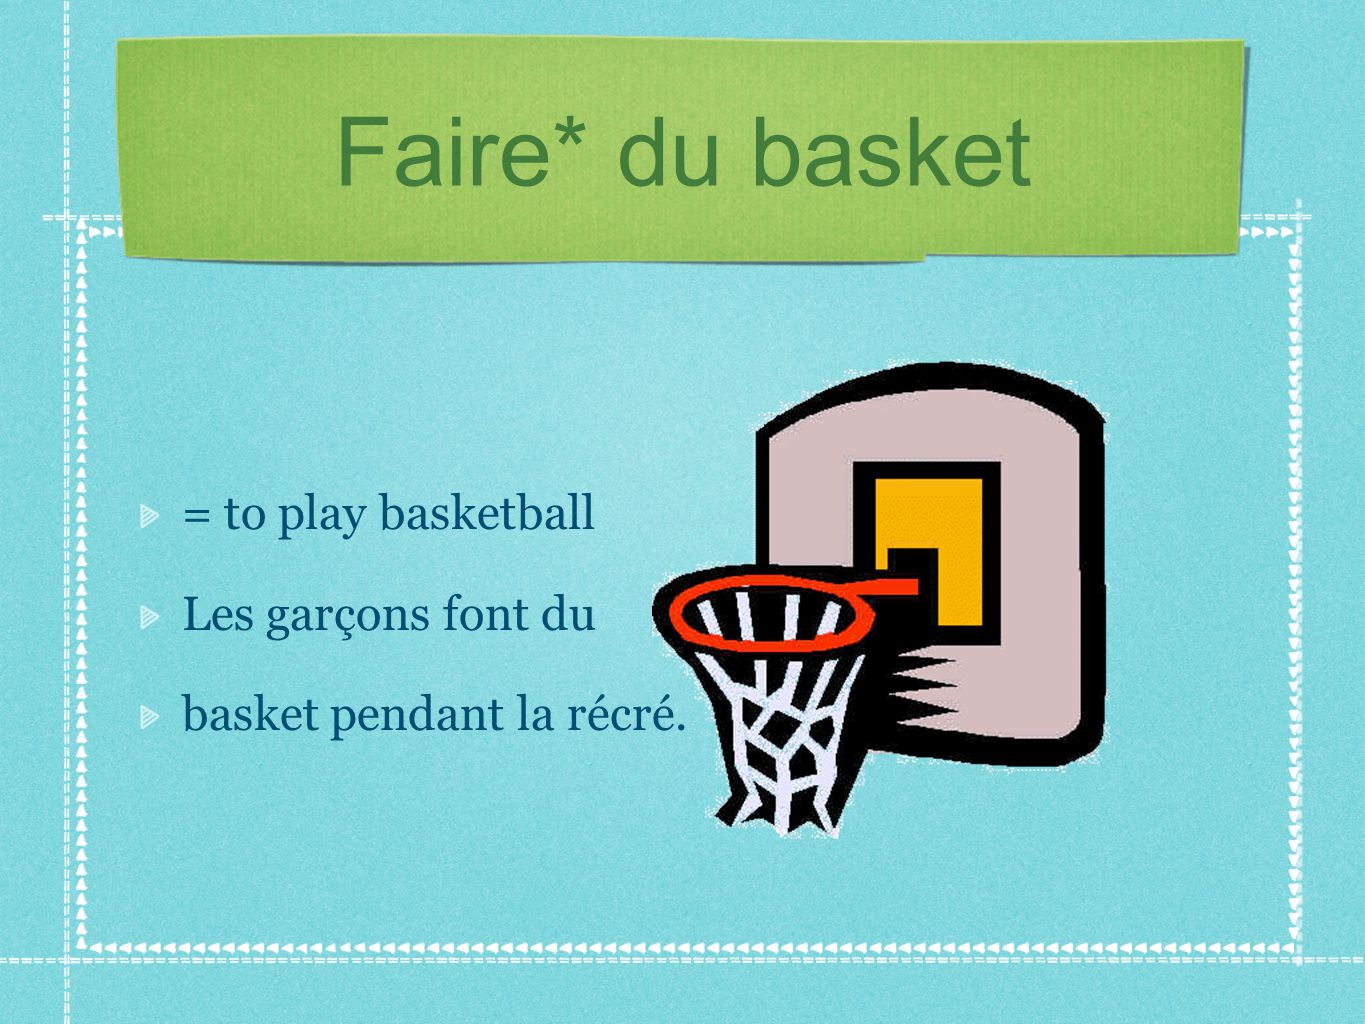 Faire* du basket = to play basketball Les garçons font du basket pendant la récré.